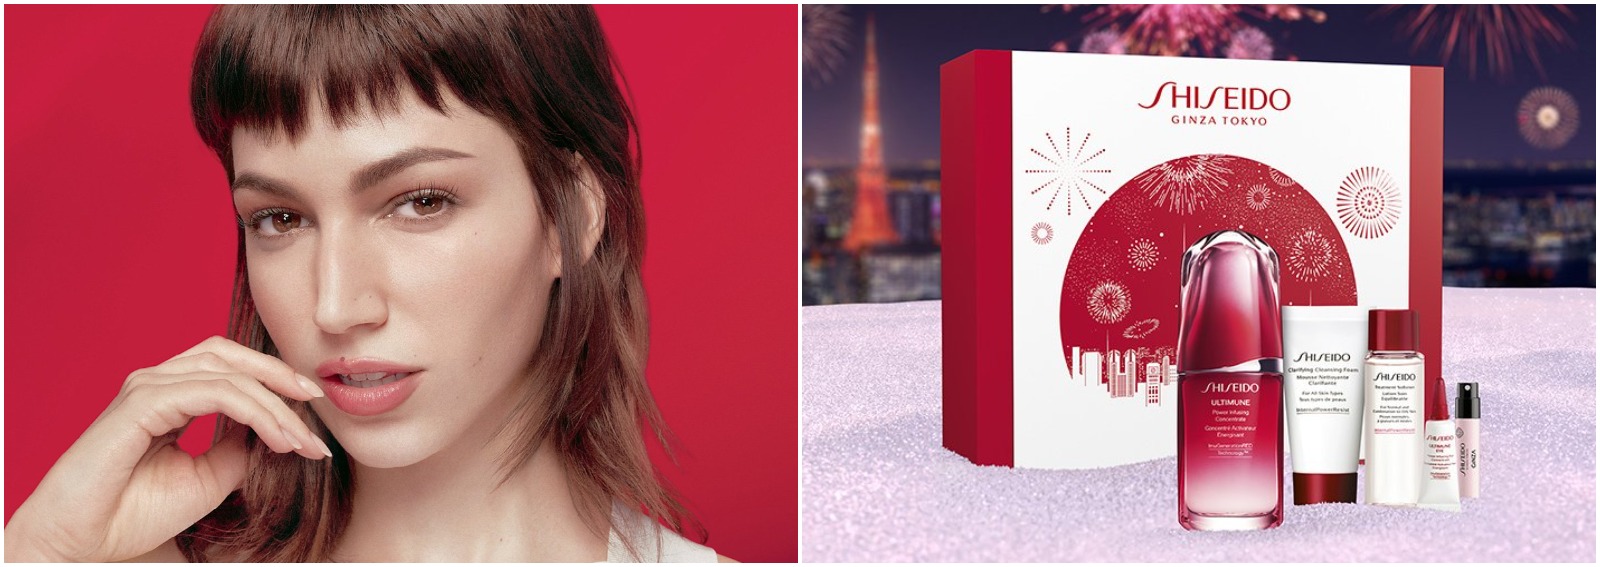 shiseido regli di natale shiseido ursula corbero tokyo la casa di carta cover desktop